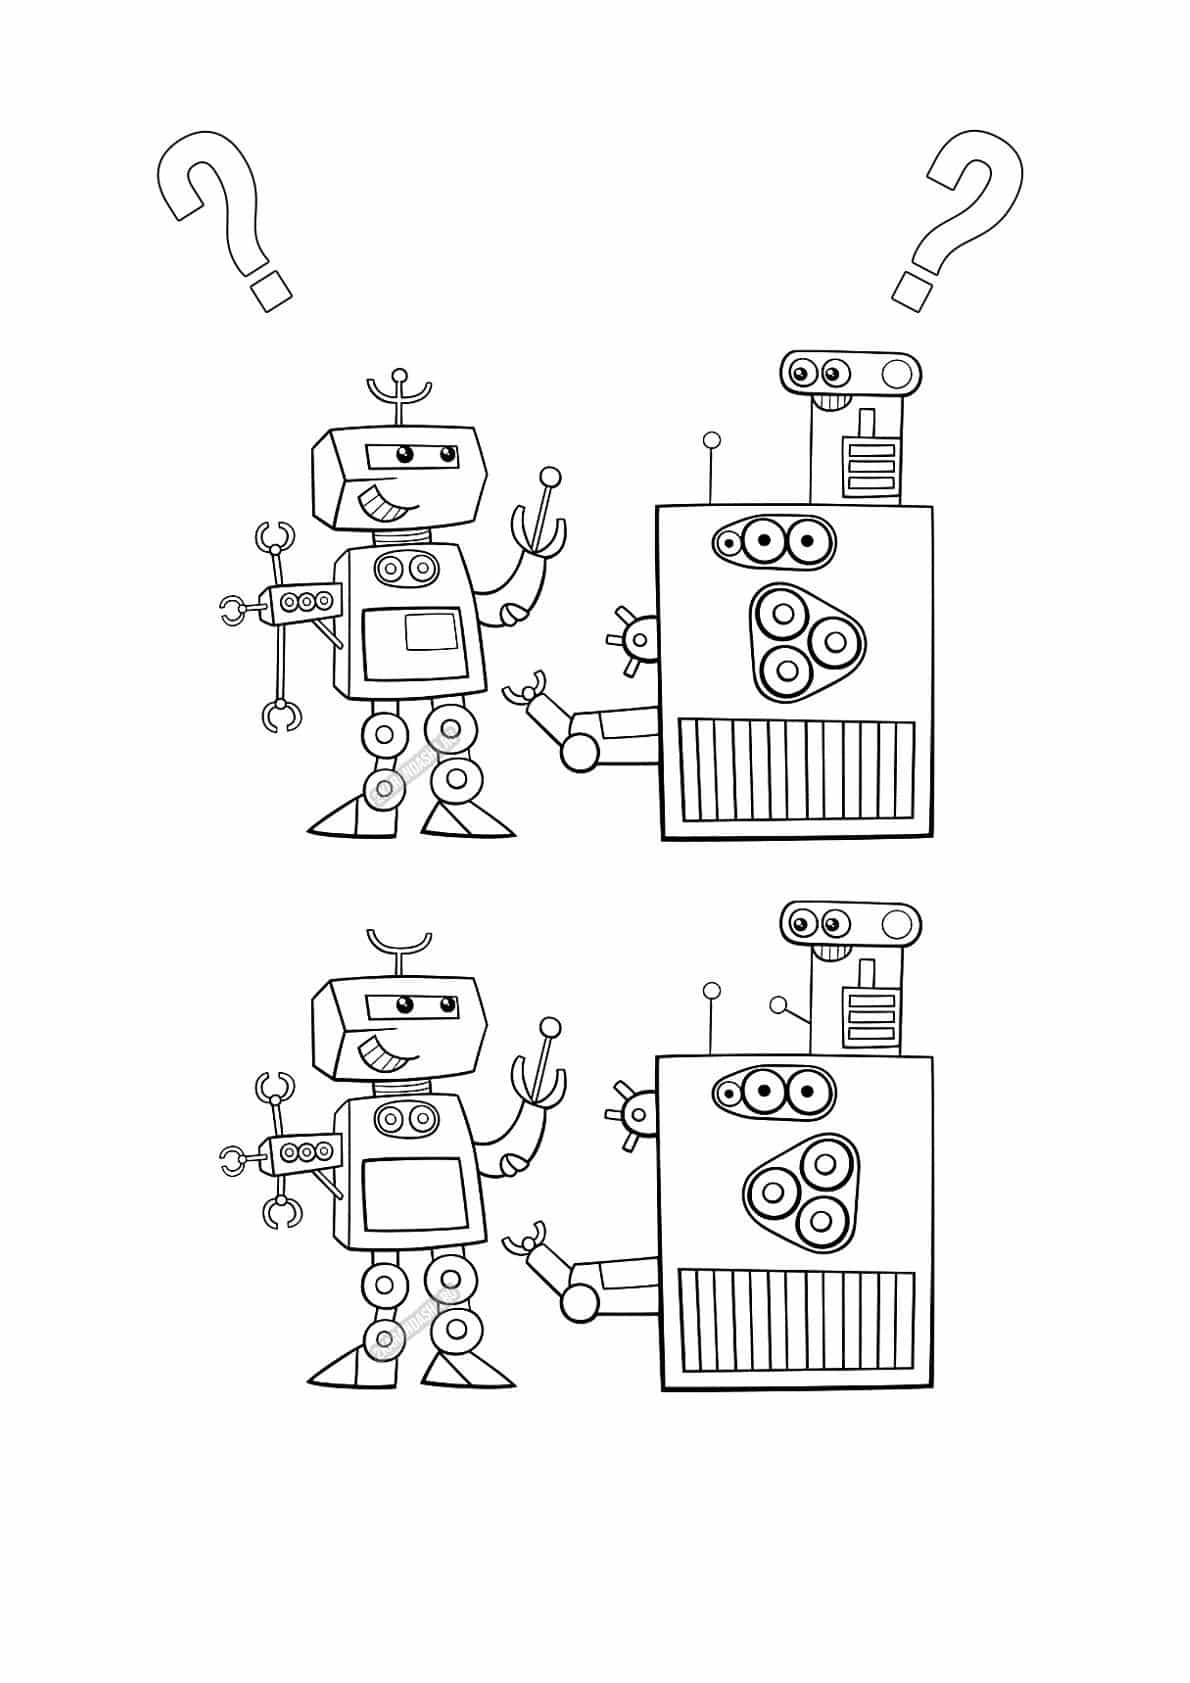 מצא את ההבדל בין ציורים של רובוט